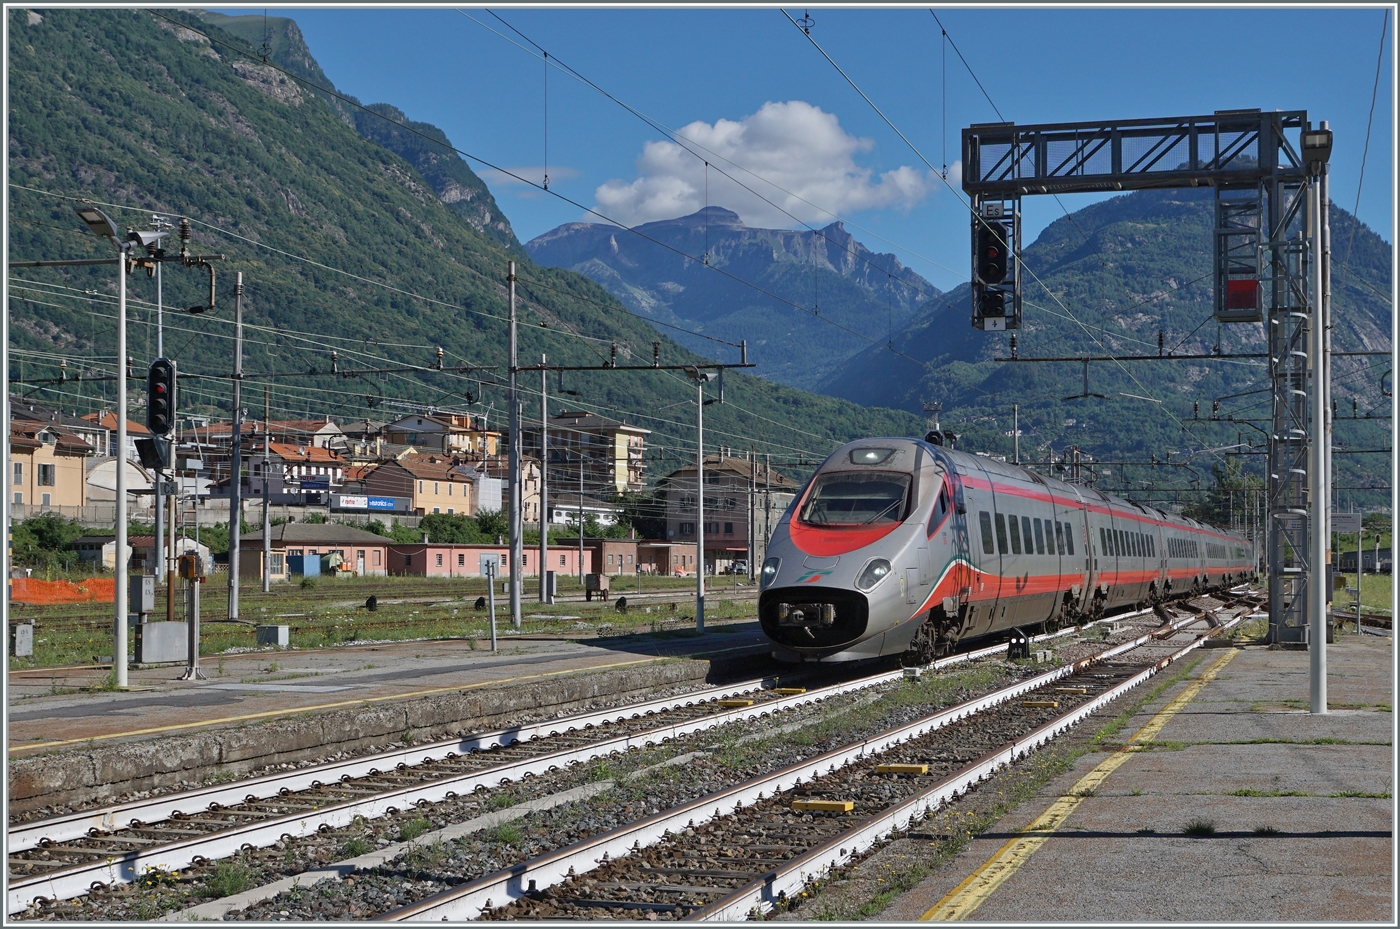 Der FS Trenitalia ETR 610 011 (und ein nicht zu sehender SBB ETR 610/RABe 503) erreichen als EC 51 (Basel SBB - Milano) den Bahnhof von Domodossola. 

25. Juni 2022